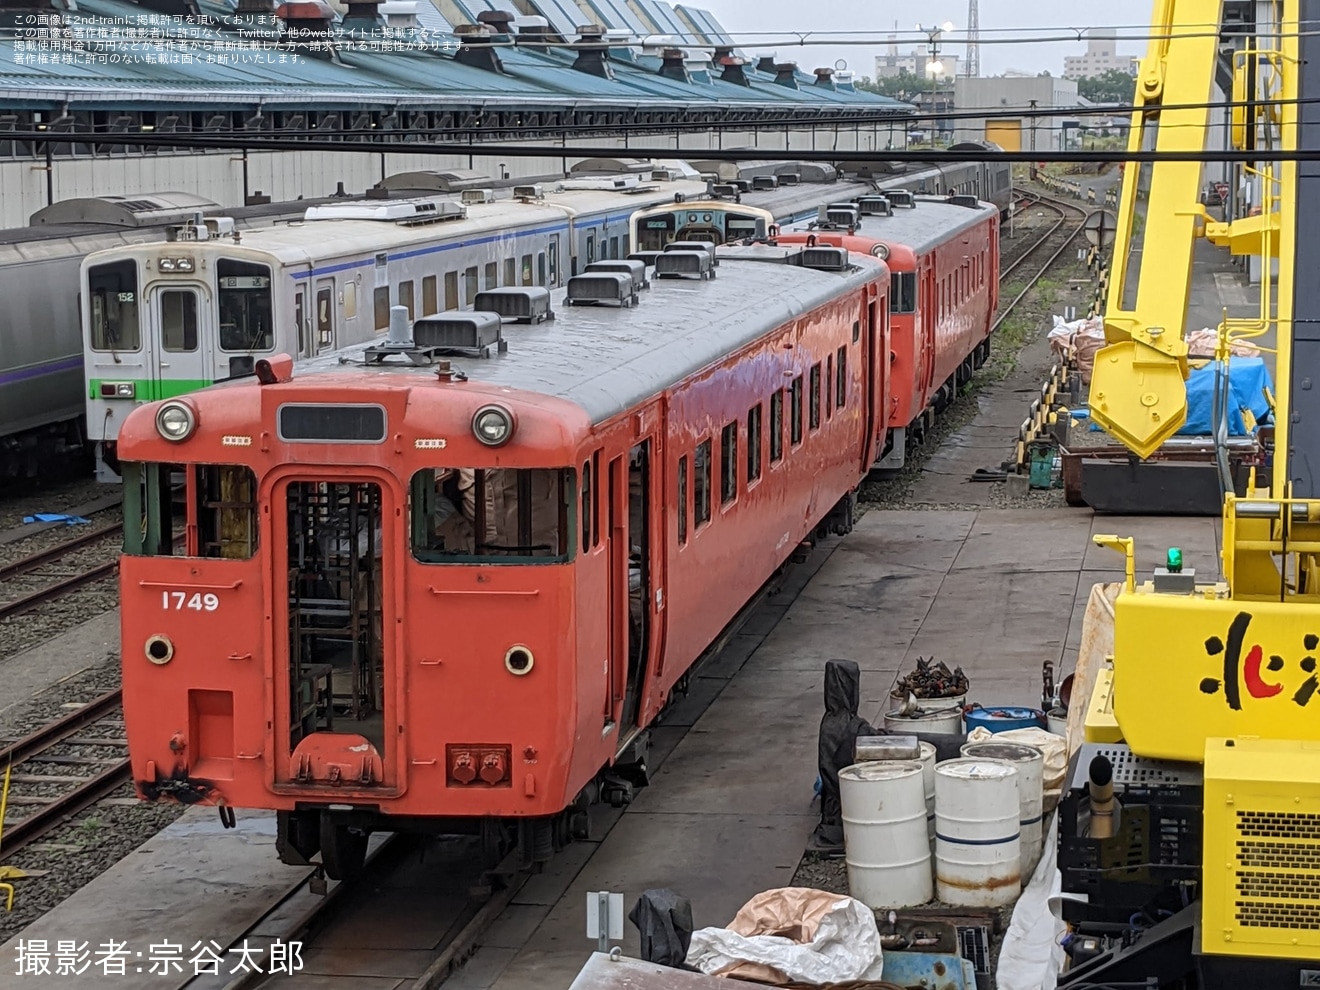 【JR北】キハ40-1749(首都圏色)が釧路運輸車両所で解体作業開始の拡大写真